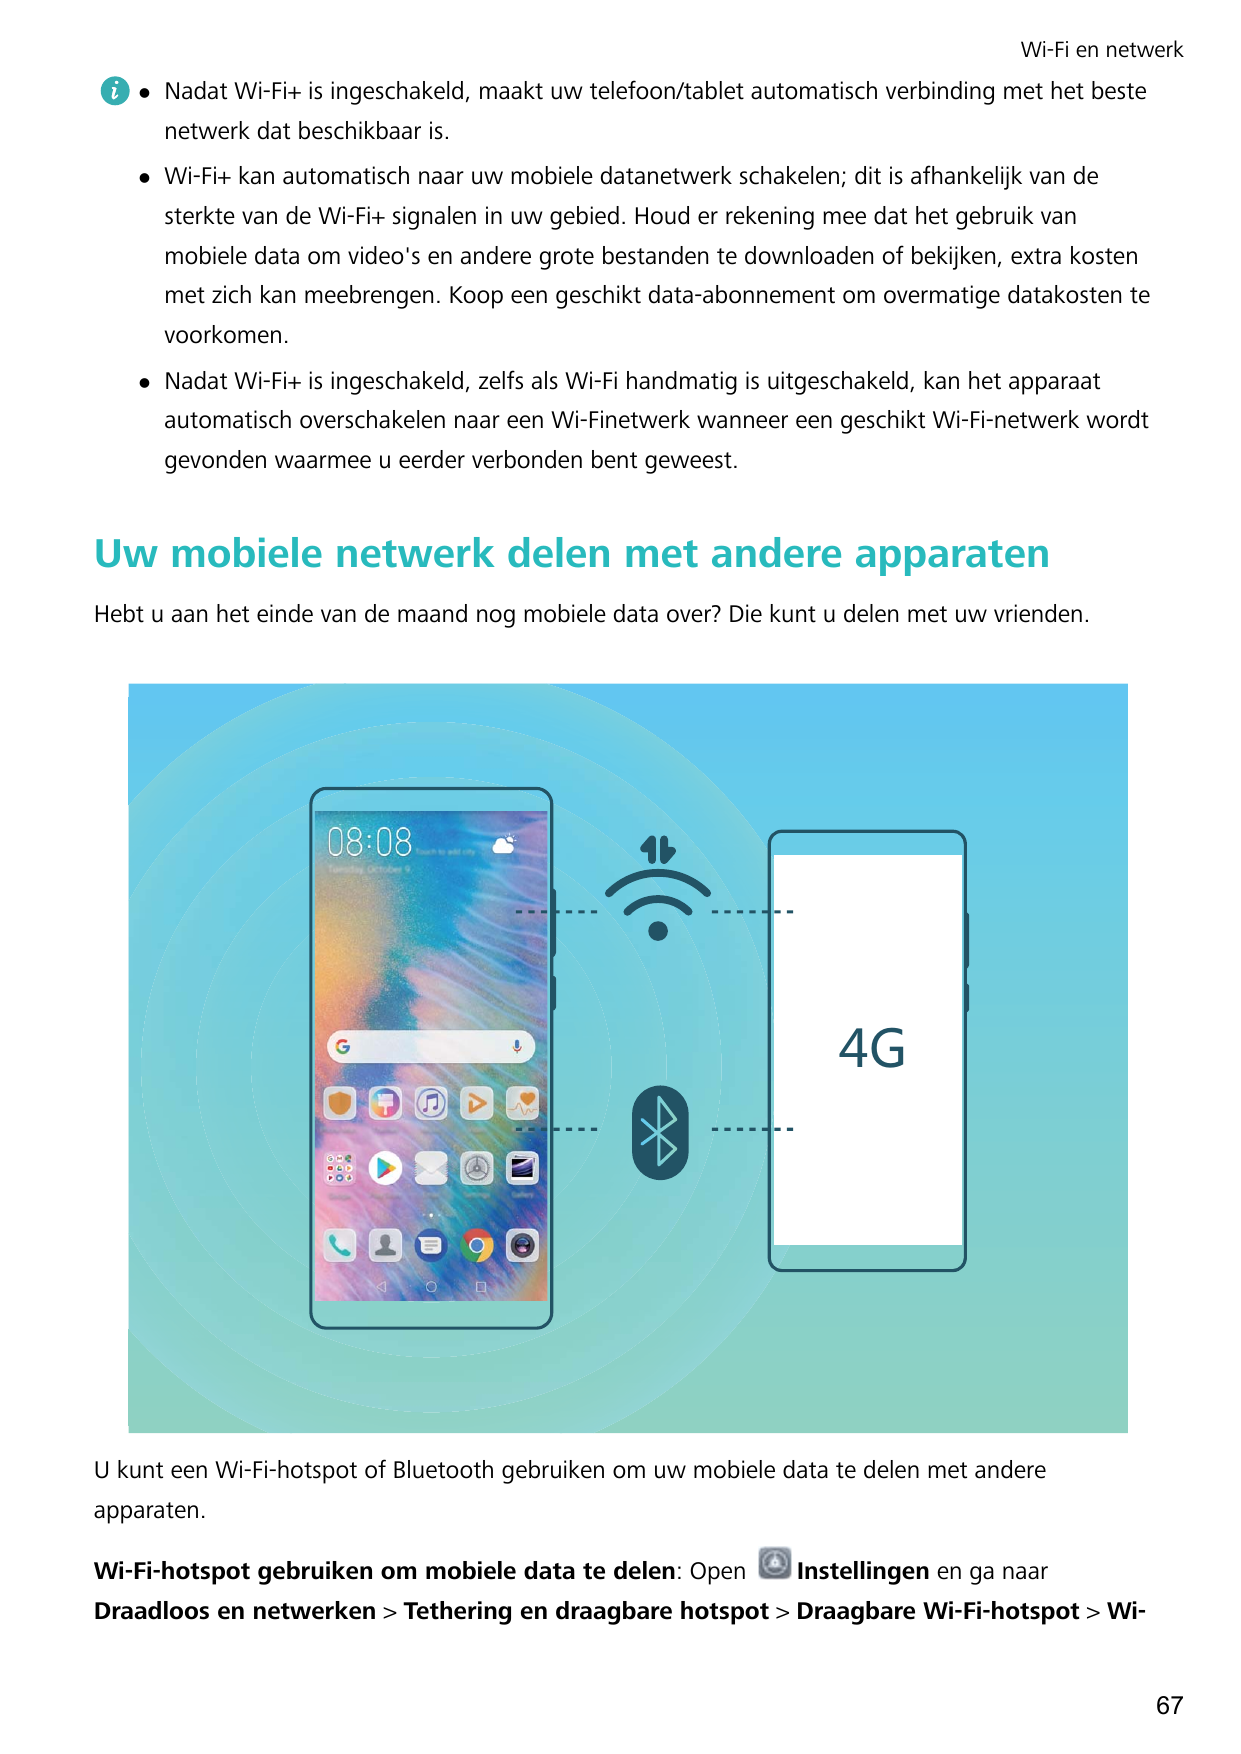 Wi-Fi en netwerklNadat Wi-Fi+ is ingeschakeld, maakt uw telefoon/tablet automatisch verbinding met het bestenetwerk dat beschikb